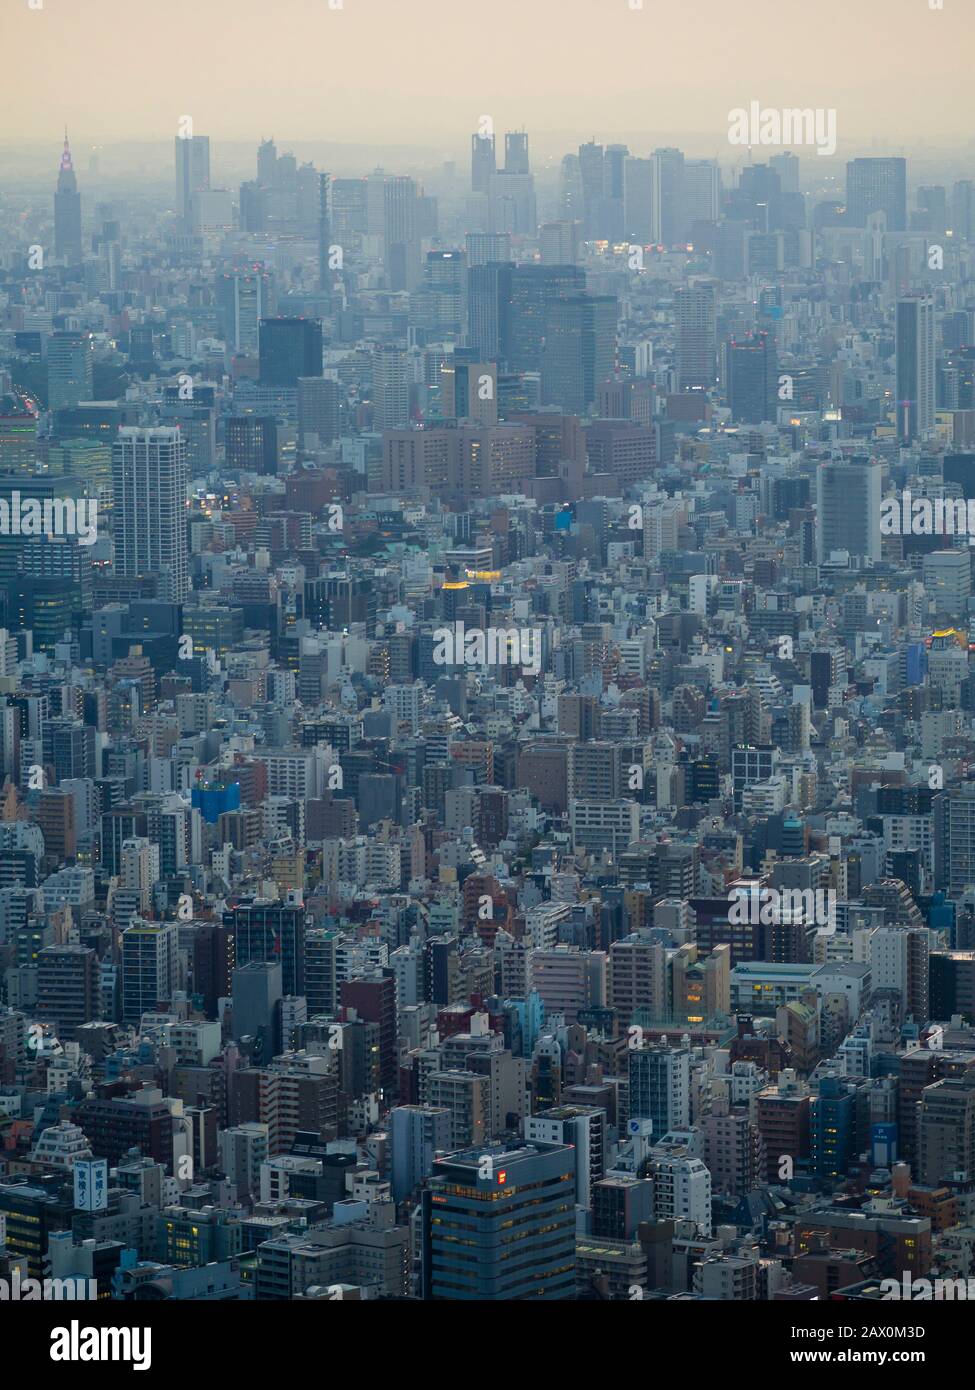 Tokio, Japan - 10. Oktober 2018: Erhöhter Blick auf die Tokioter Metropole und die Skyline der Stadt. Stockfoto